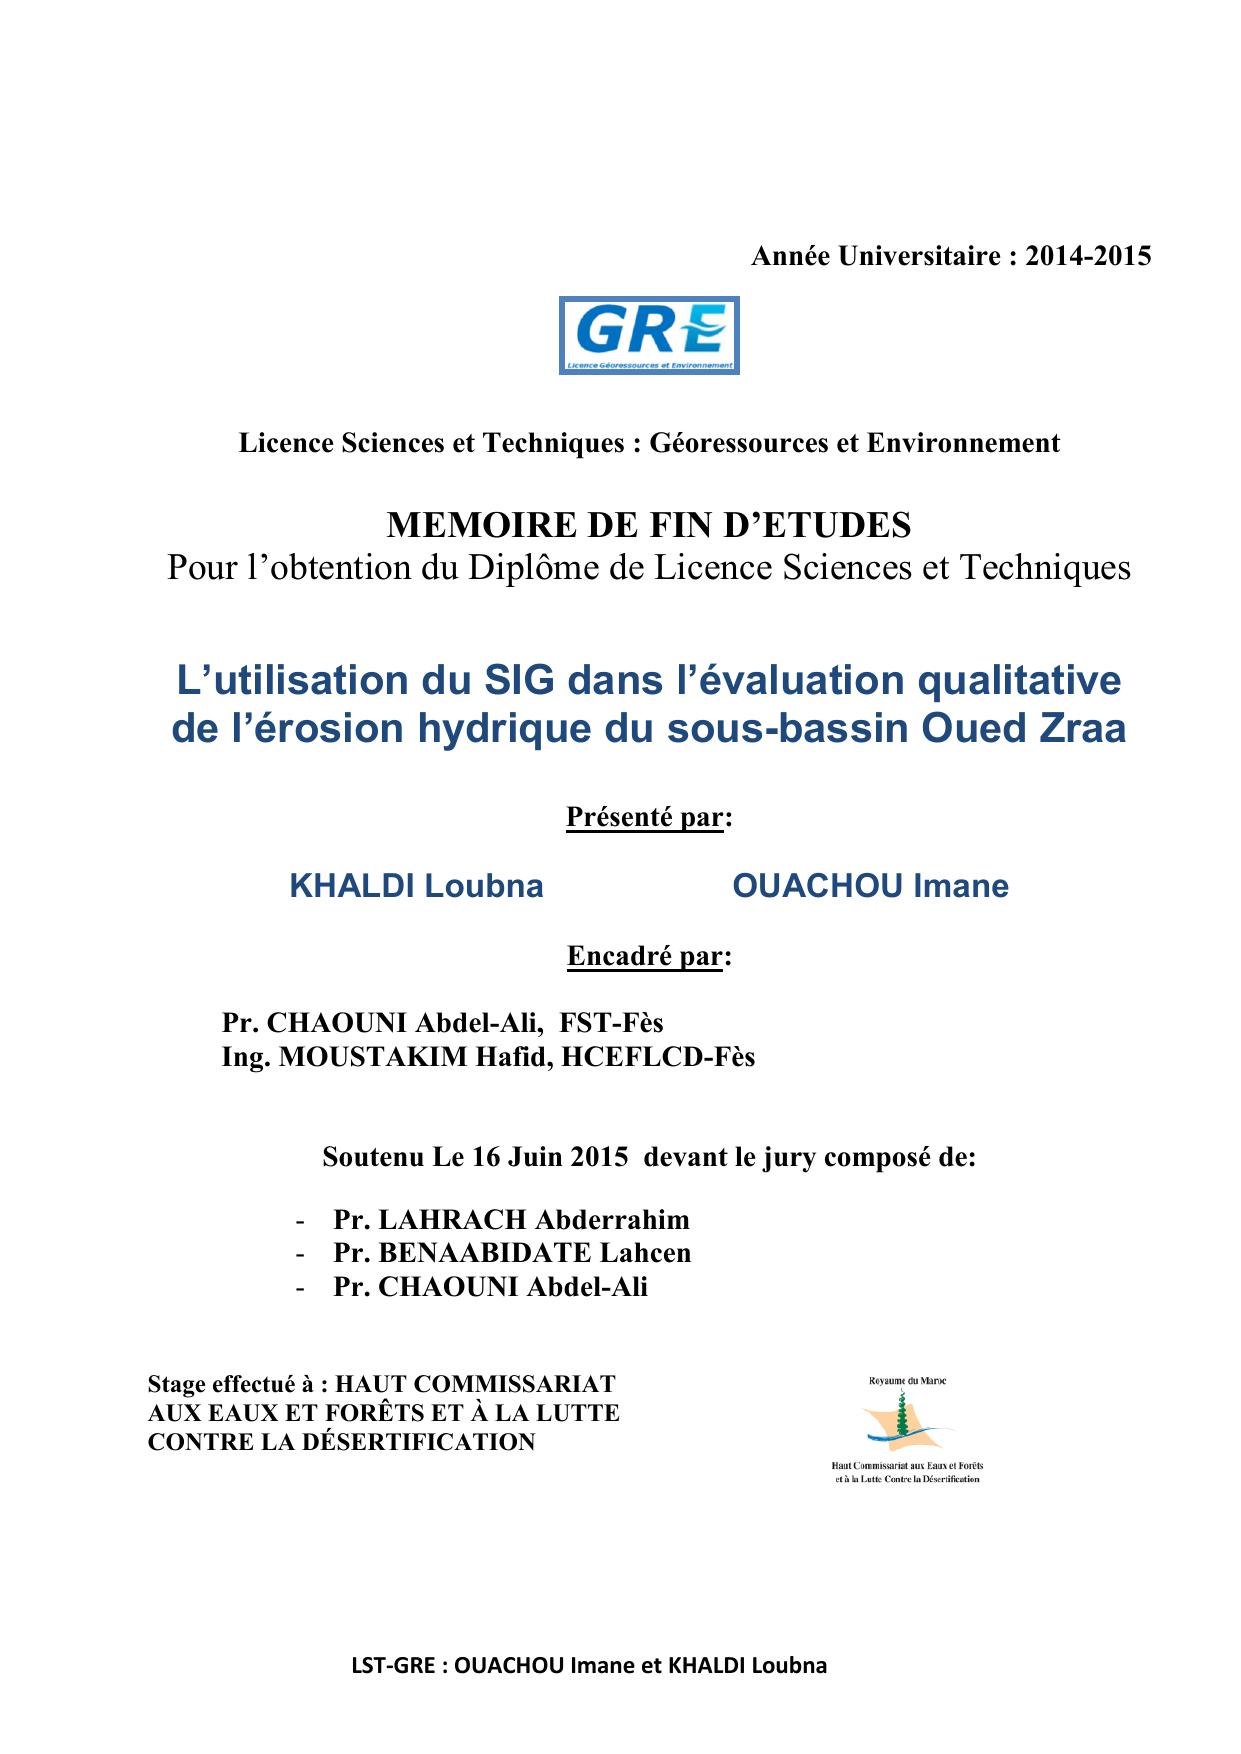 L’utilisation du SIG dans l’évaluation qualitative de l’érosion hydrique du sous-bassin Oued Zraa